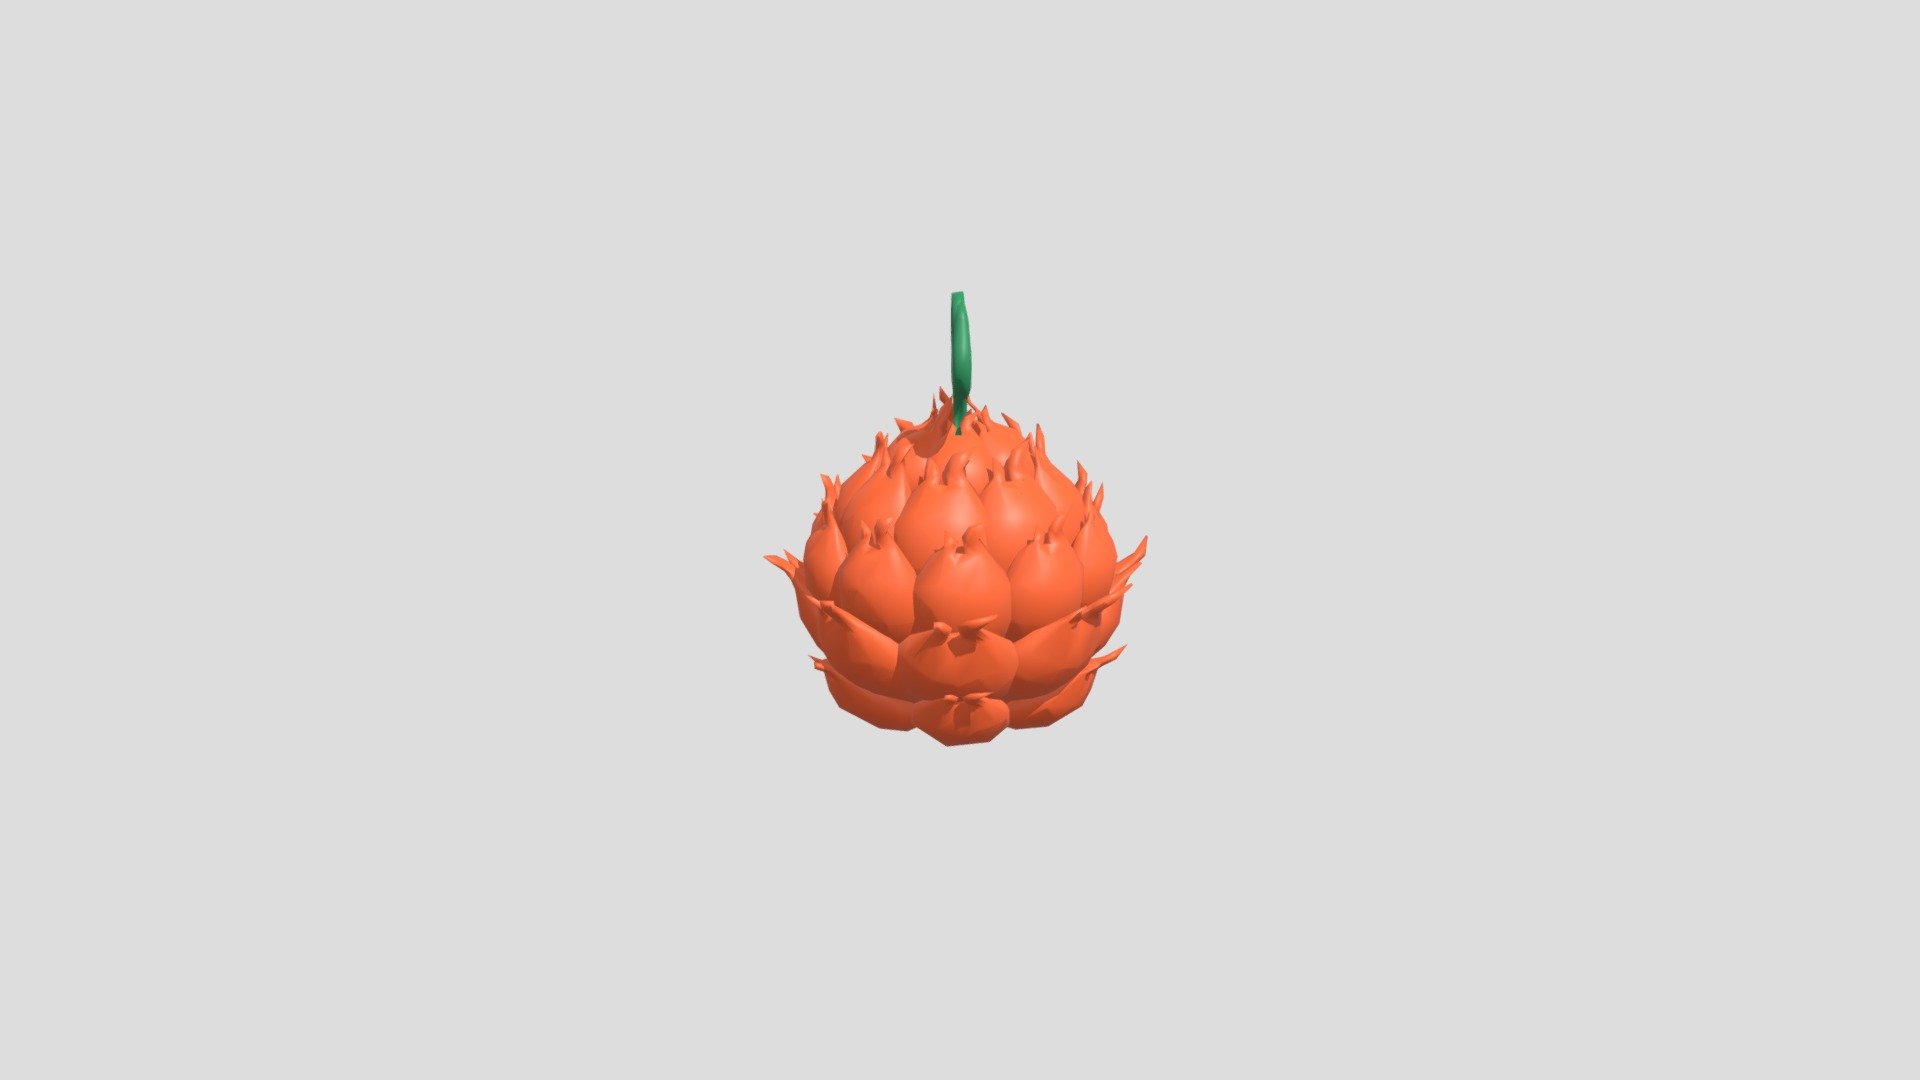 Devil Fruit - Mera Mera no Mi 3D model 3D printable